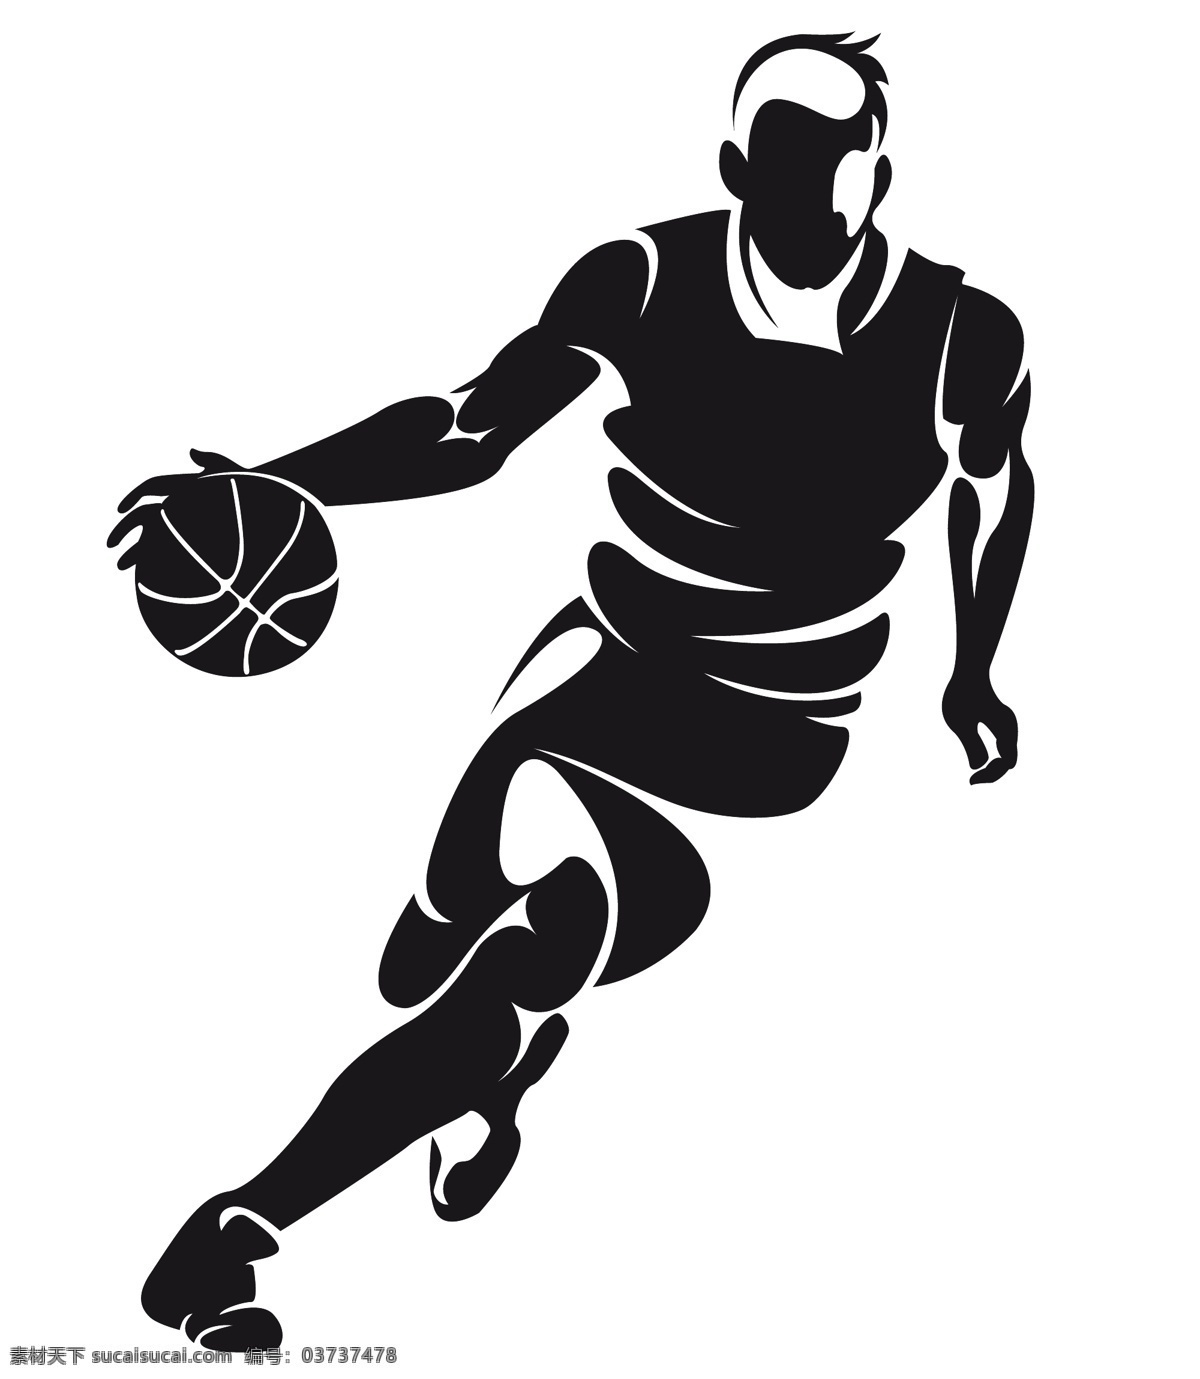 篮球运动员 篮球 手绘篮球 运球 人物剪影 轮廓 cba 篮球运动 nba 球篮 basketball 体育运动 矢量 人物图库 职业人物